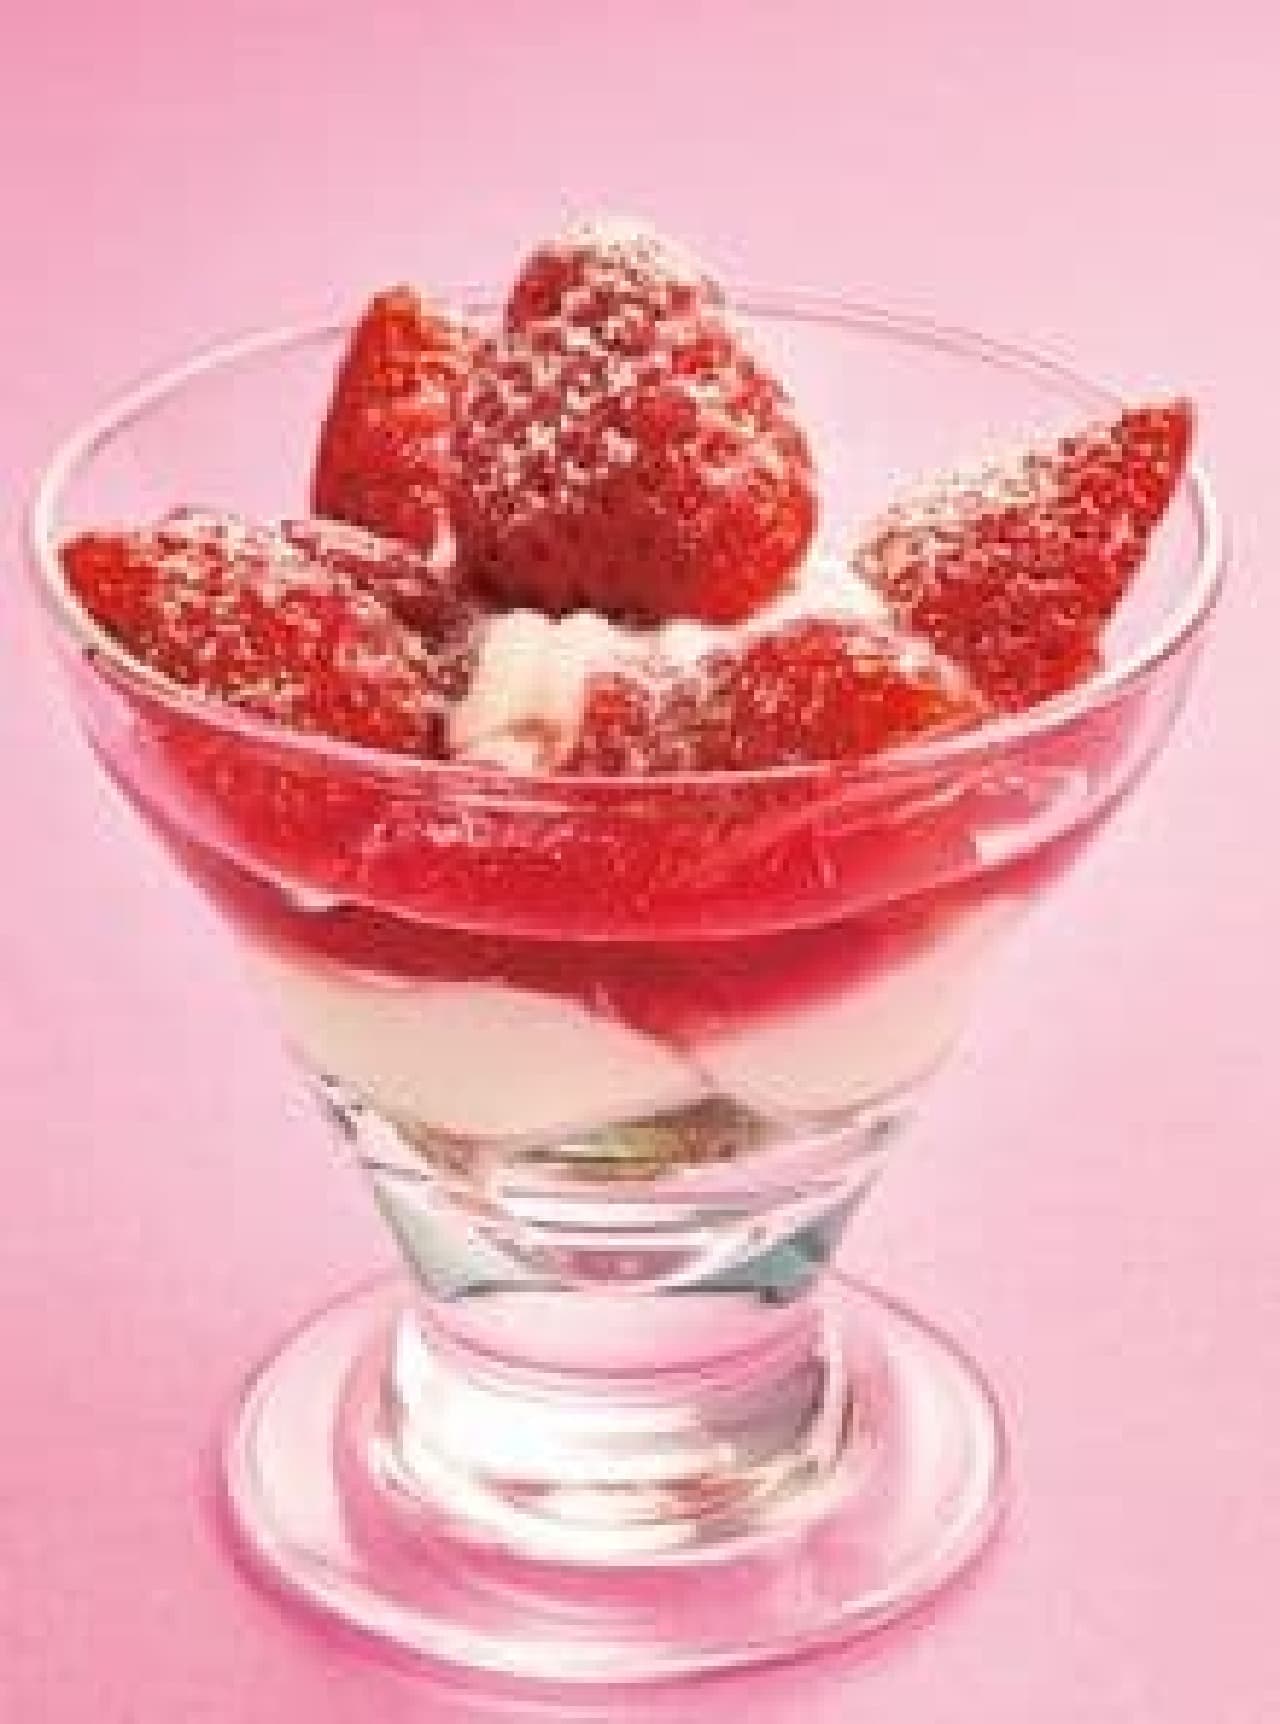 Joyful "Fresh Strawberry and Miruku Strawberry Jelly